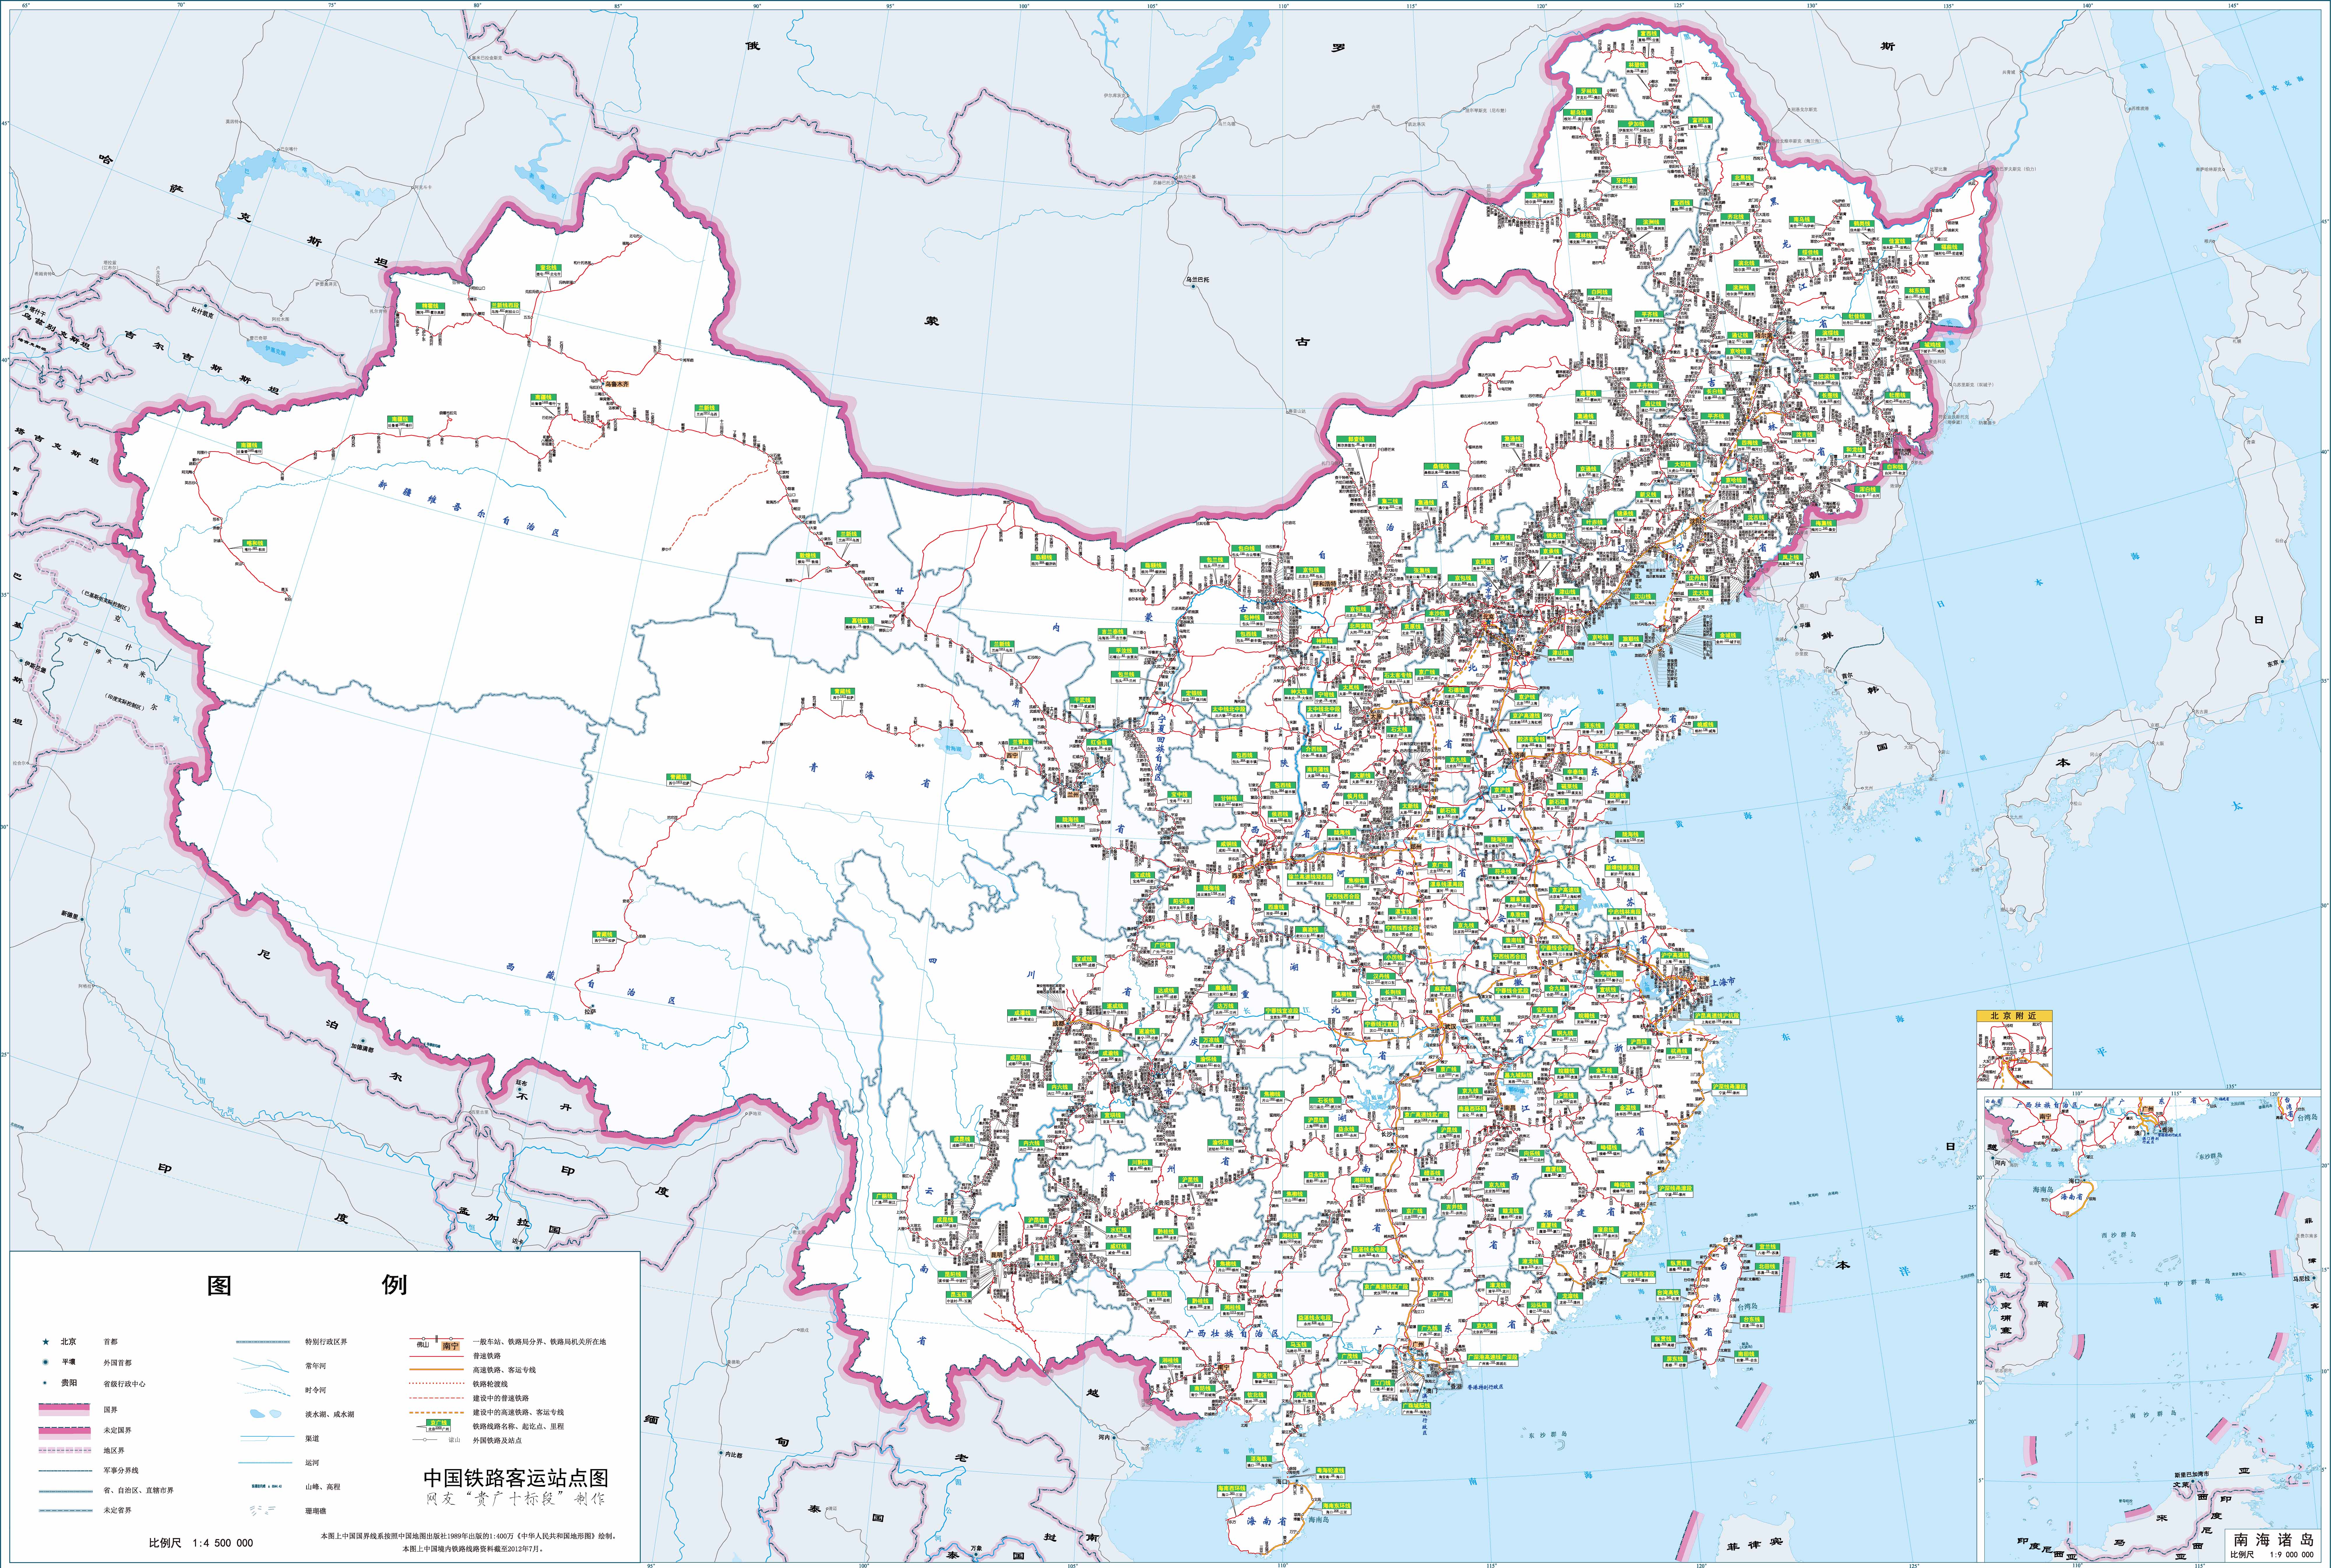 中国铁路图全图可放大 高铁线路图2019高清pdf_2019中国铁路图全图可放大